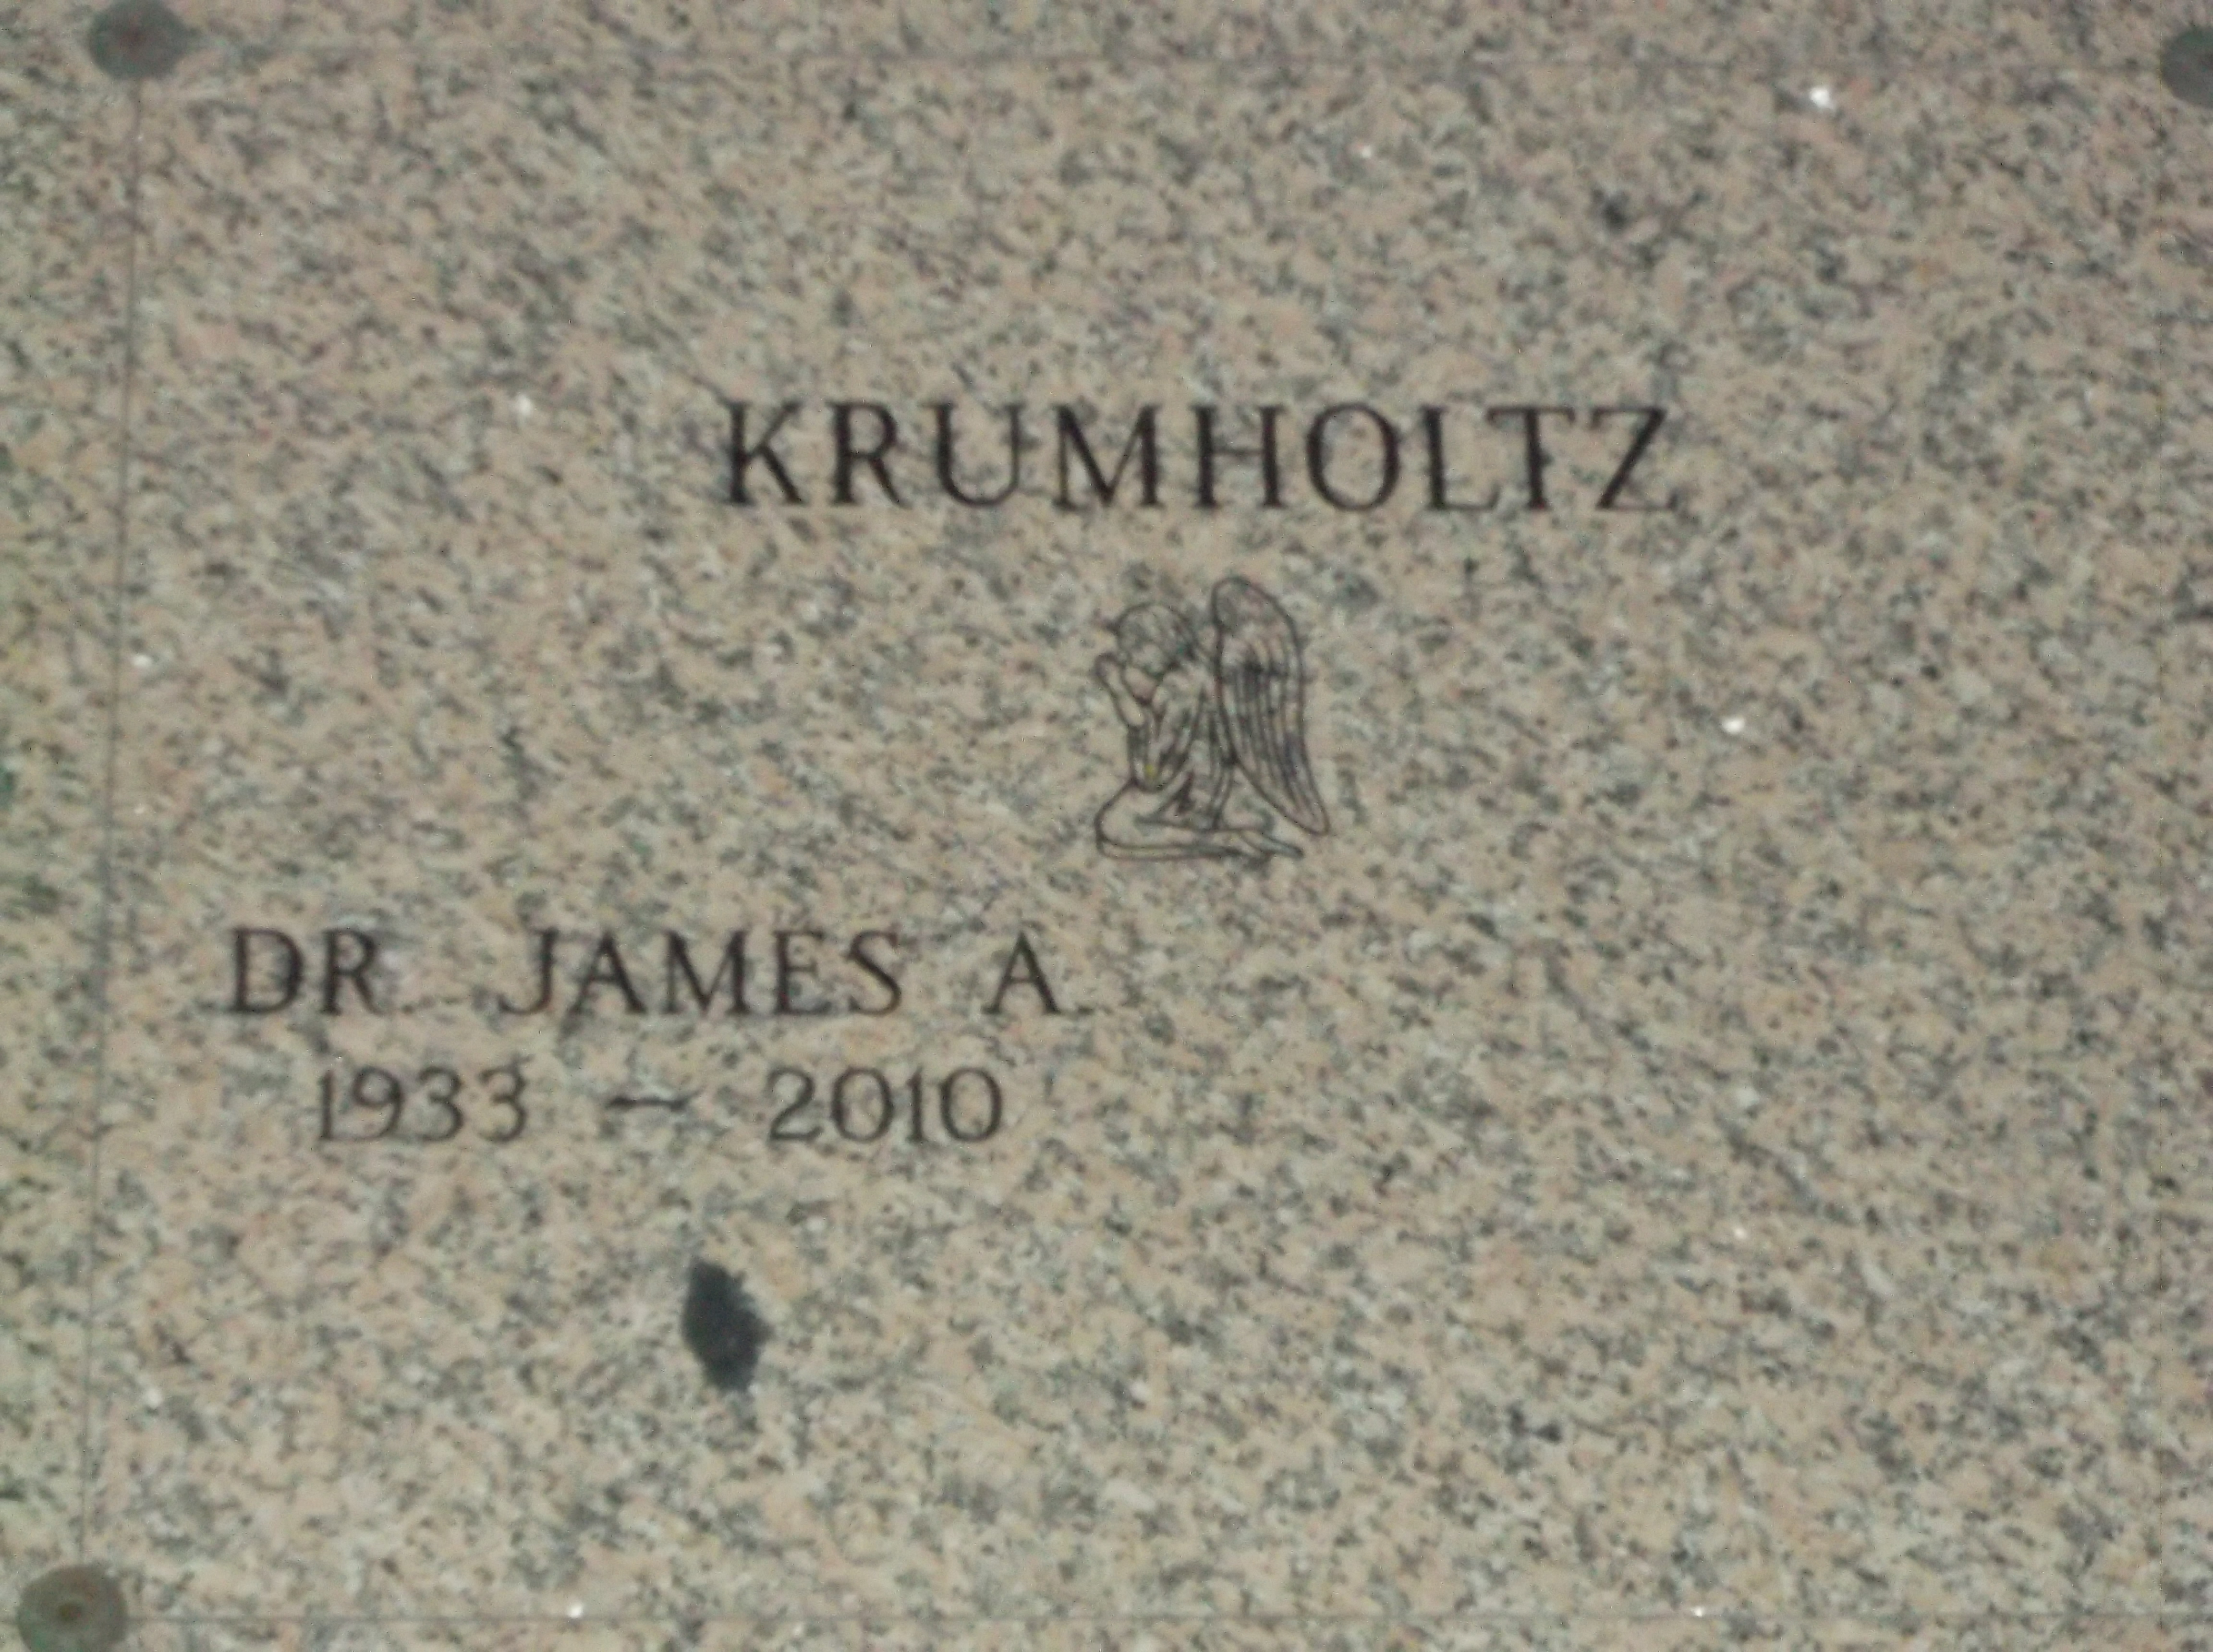 Dr James A Krumholtz